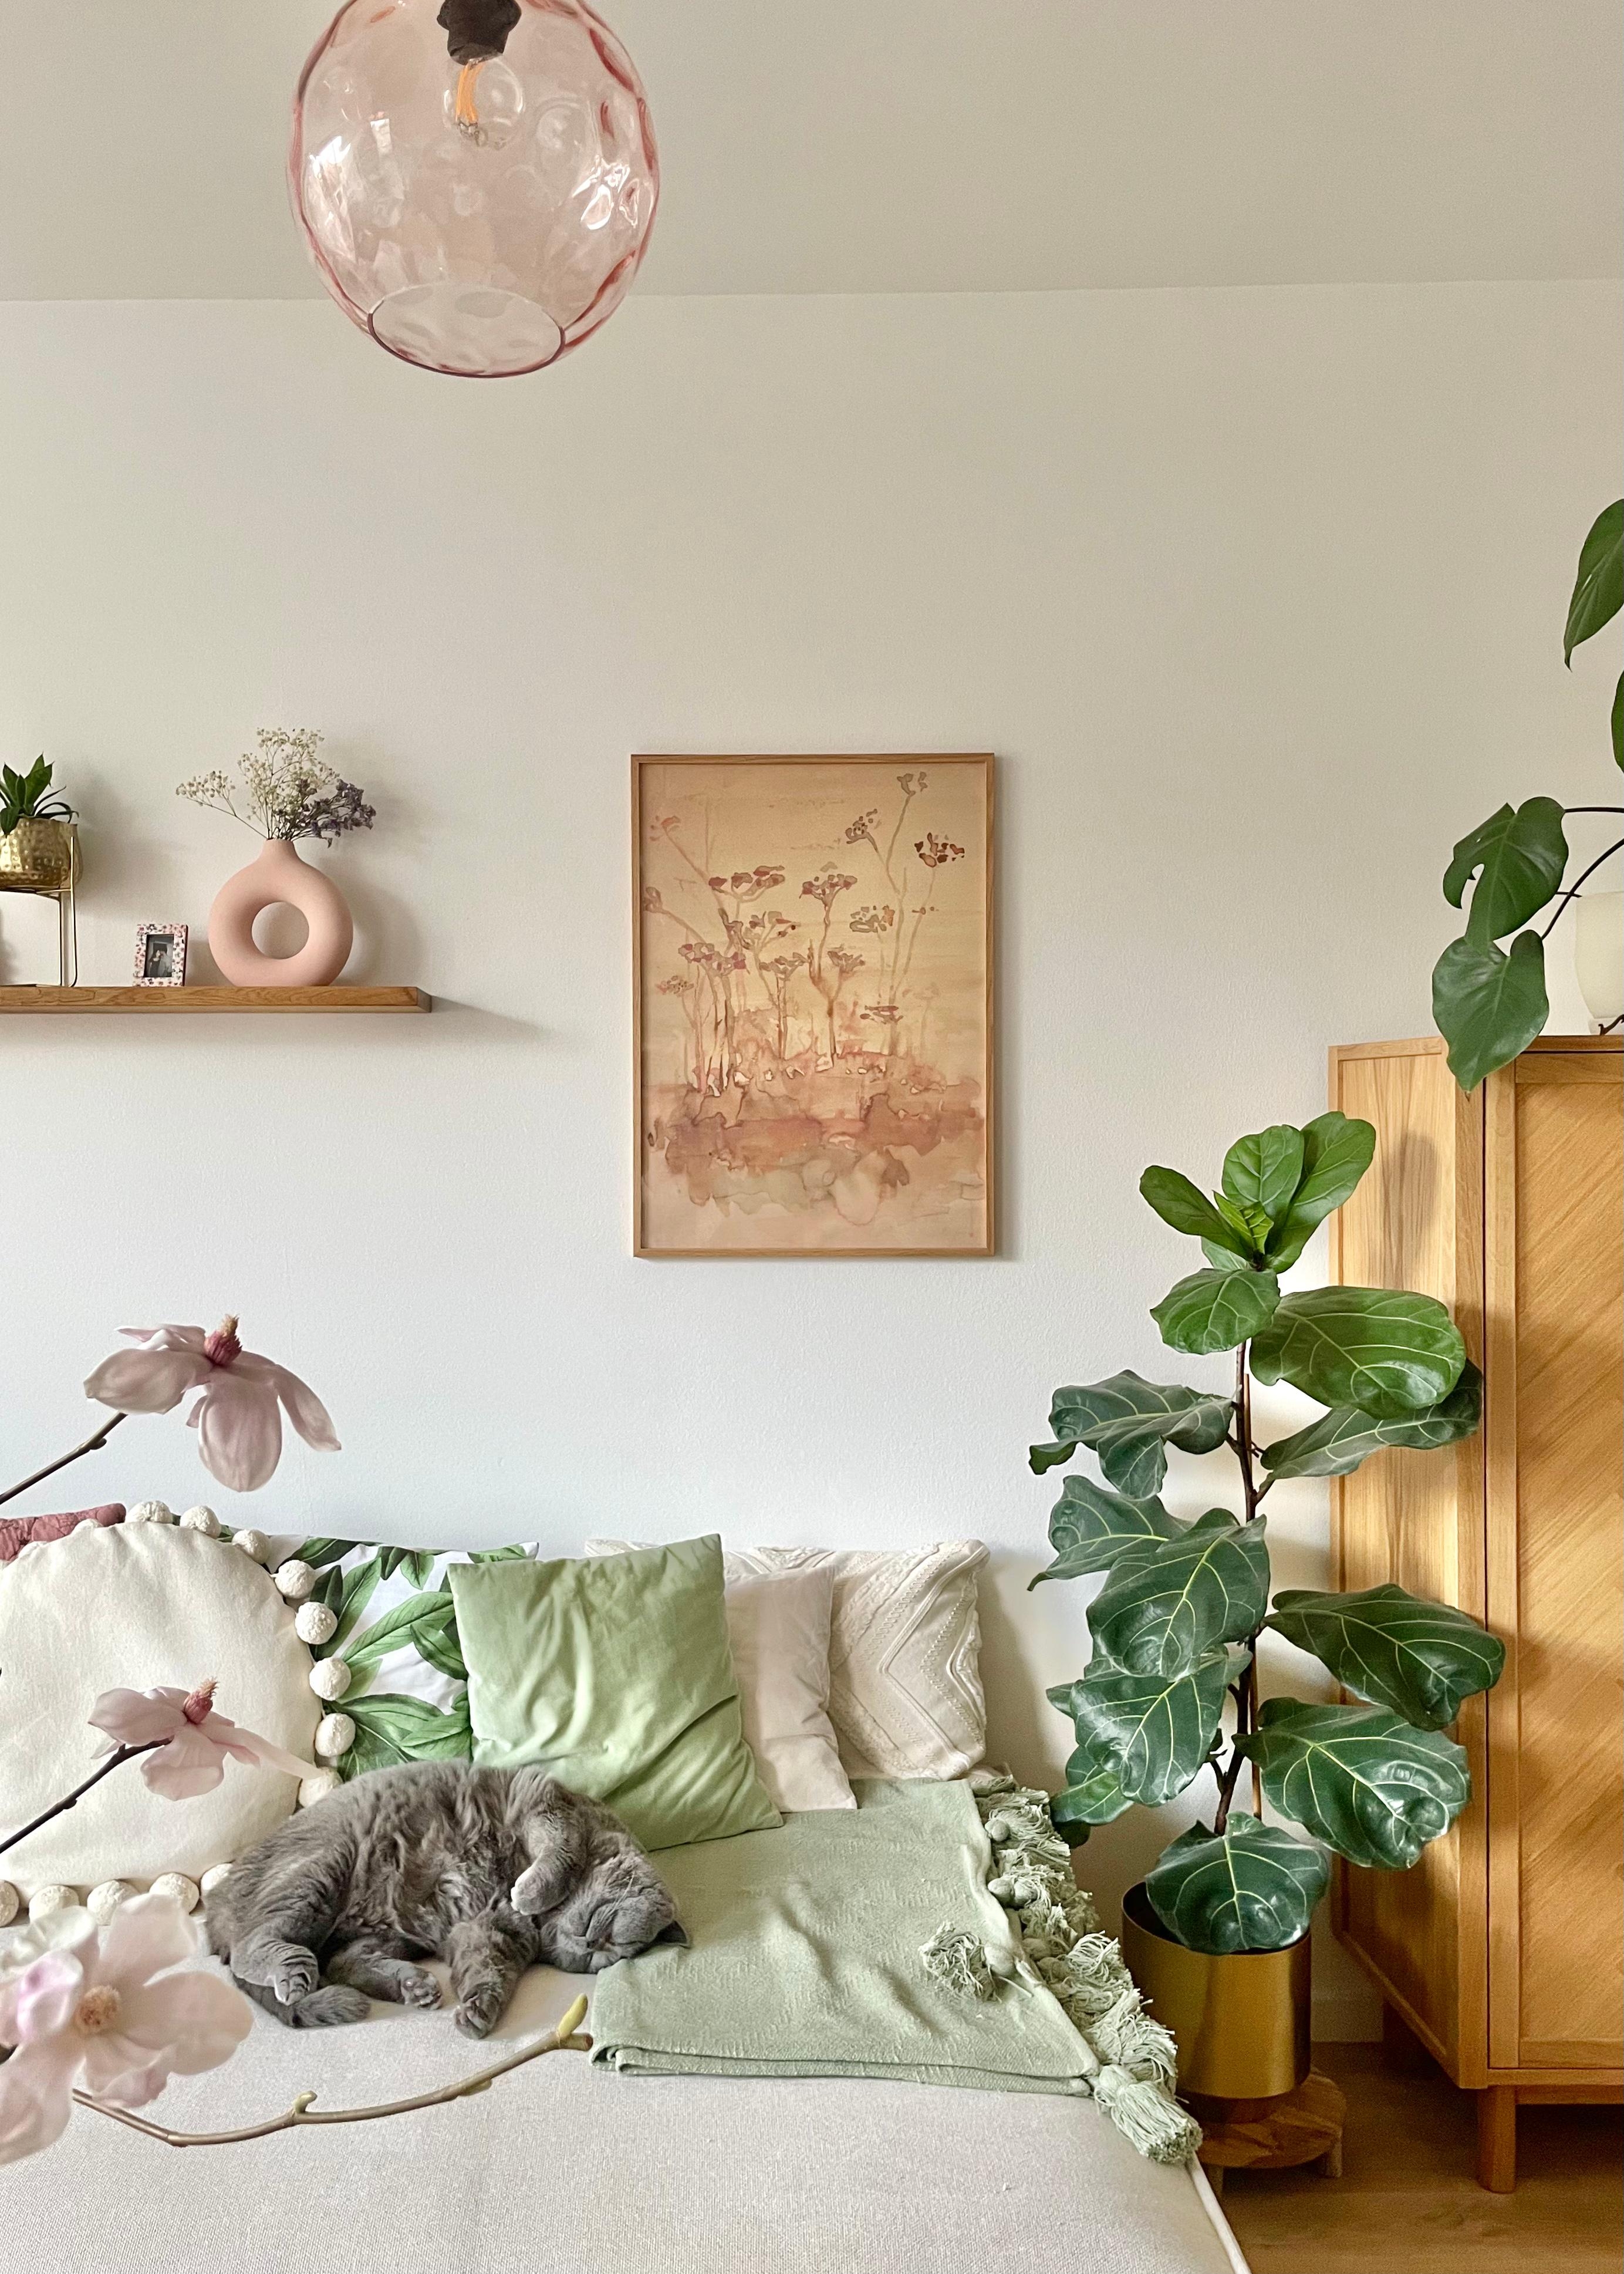 Liebe die Frühlingskombo Rosa & Grün im Wohnzimmer 🌸🌿 #pastellfarben